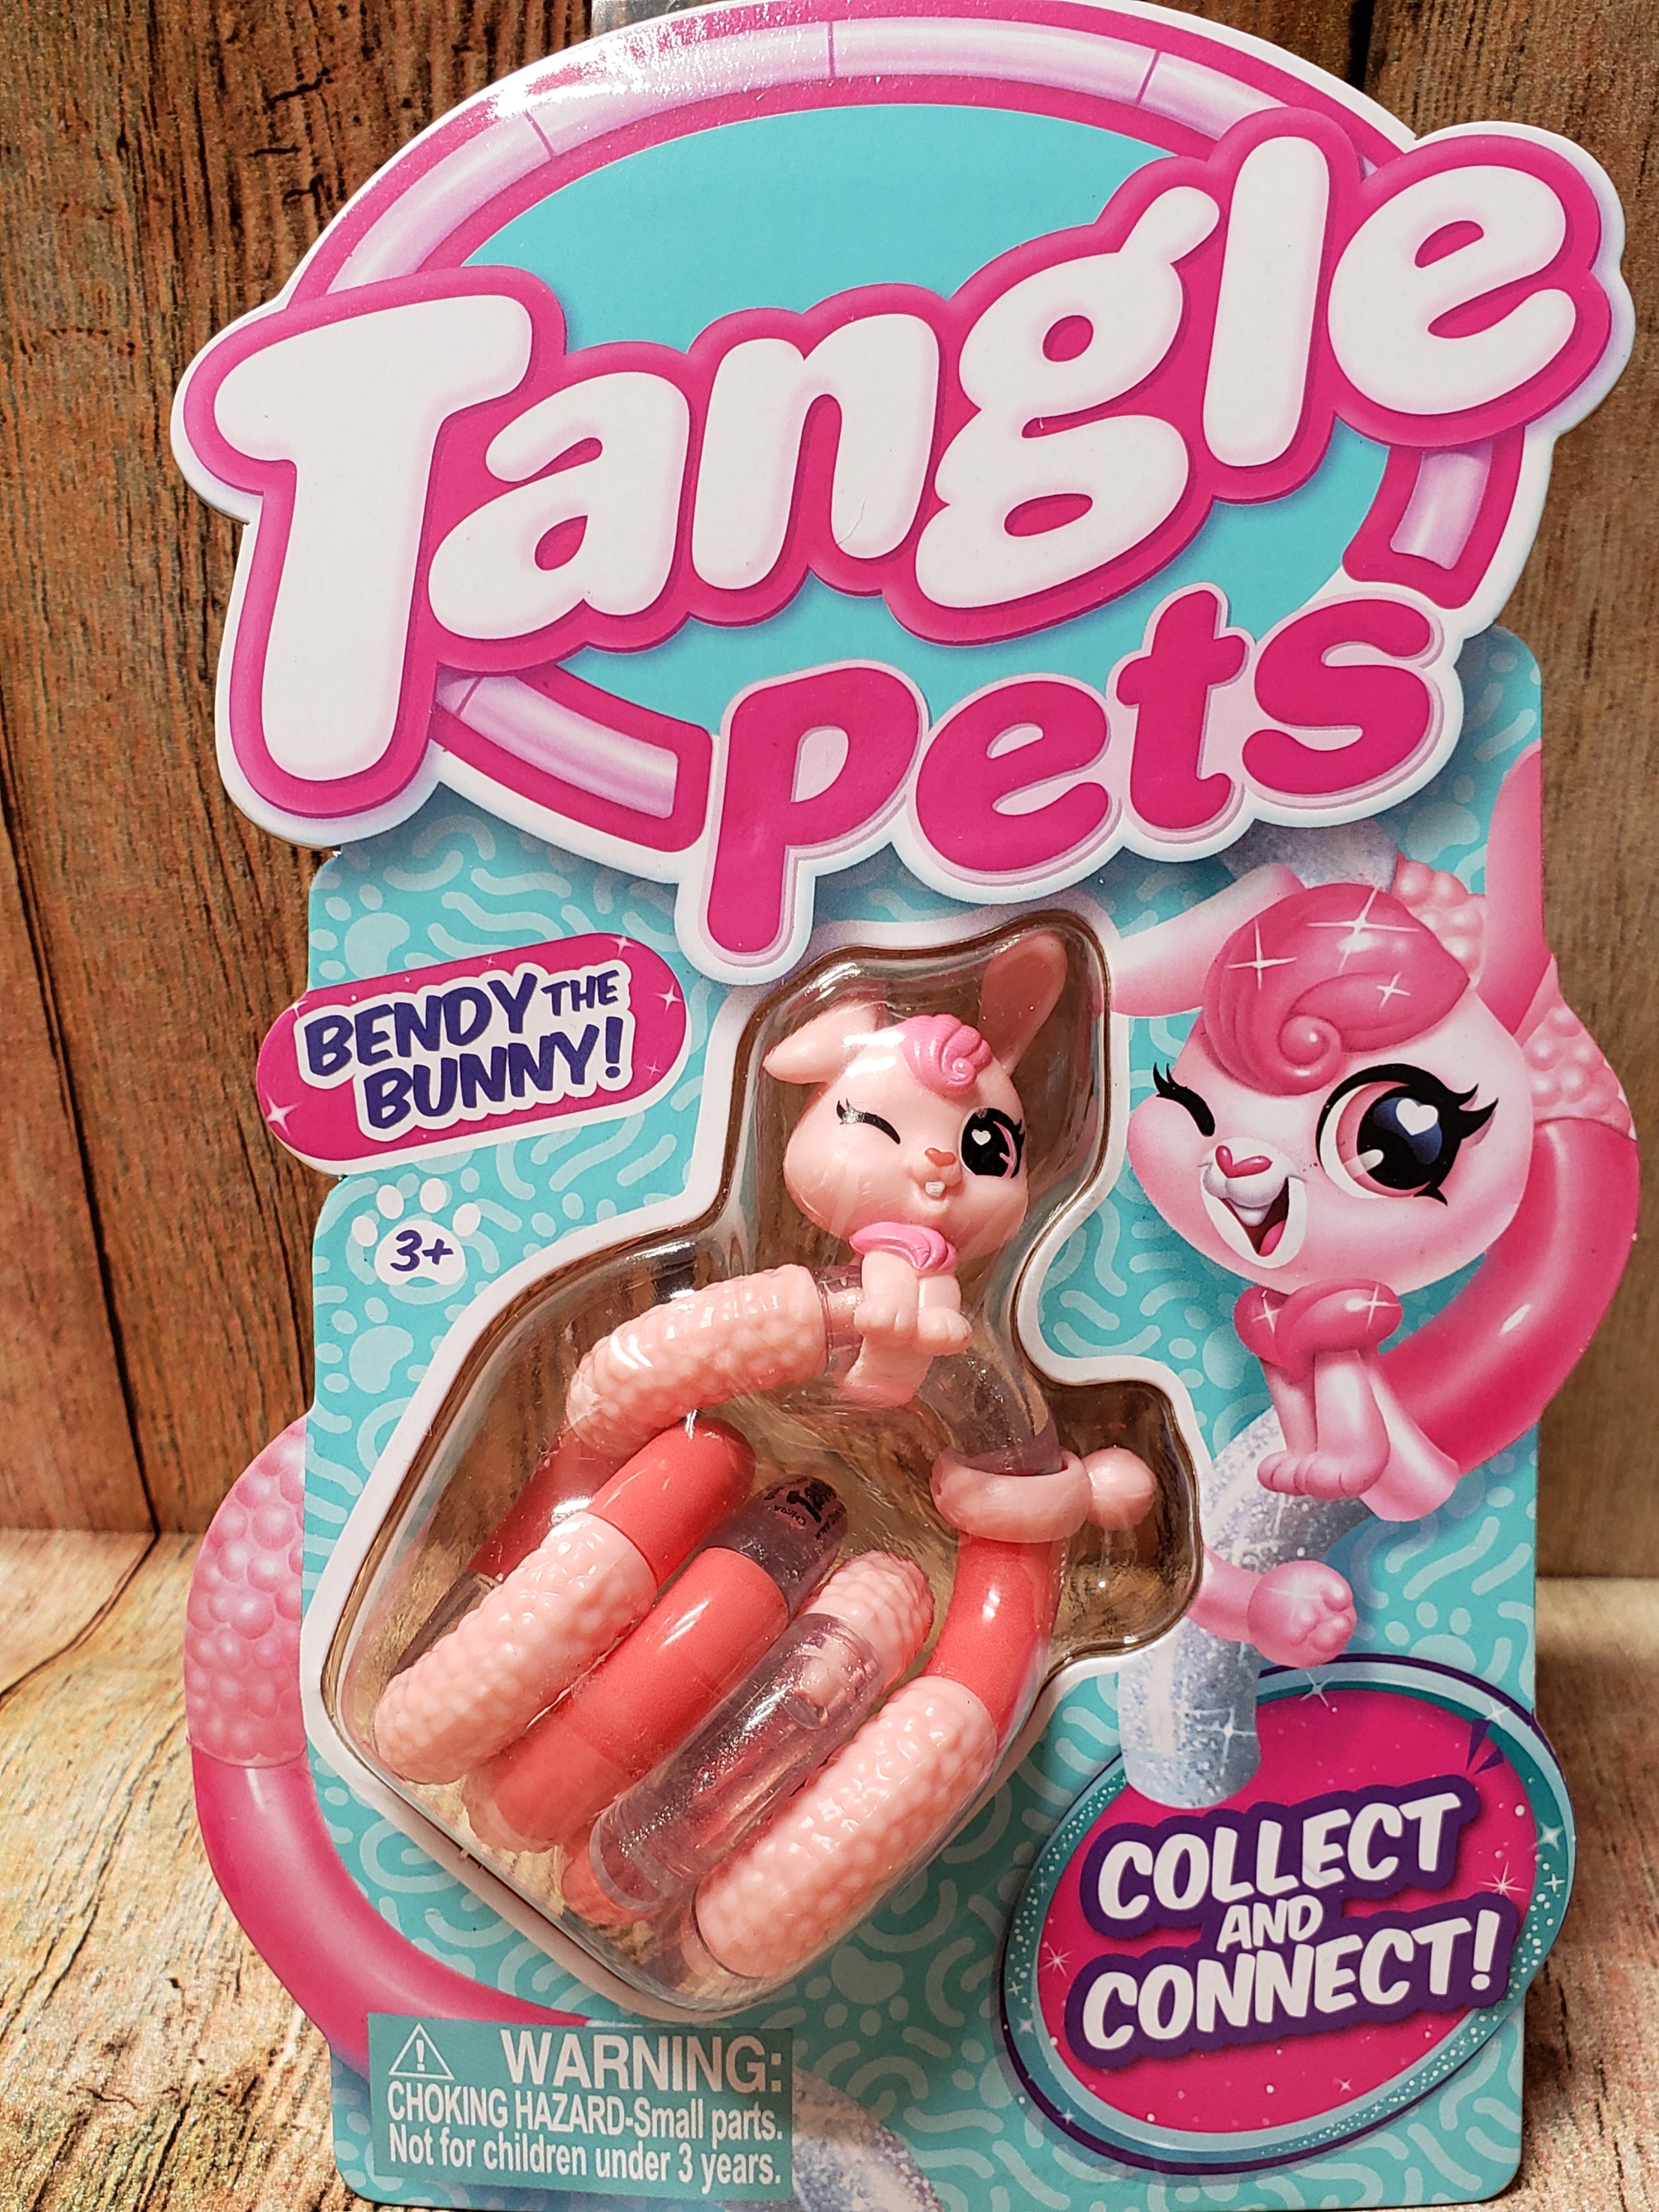 Tangle pets